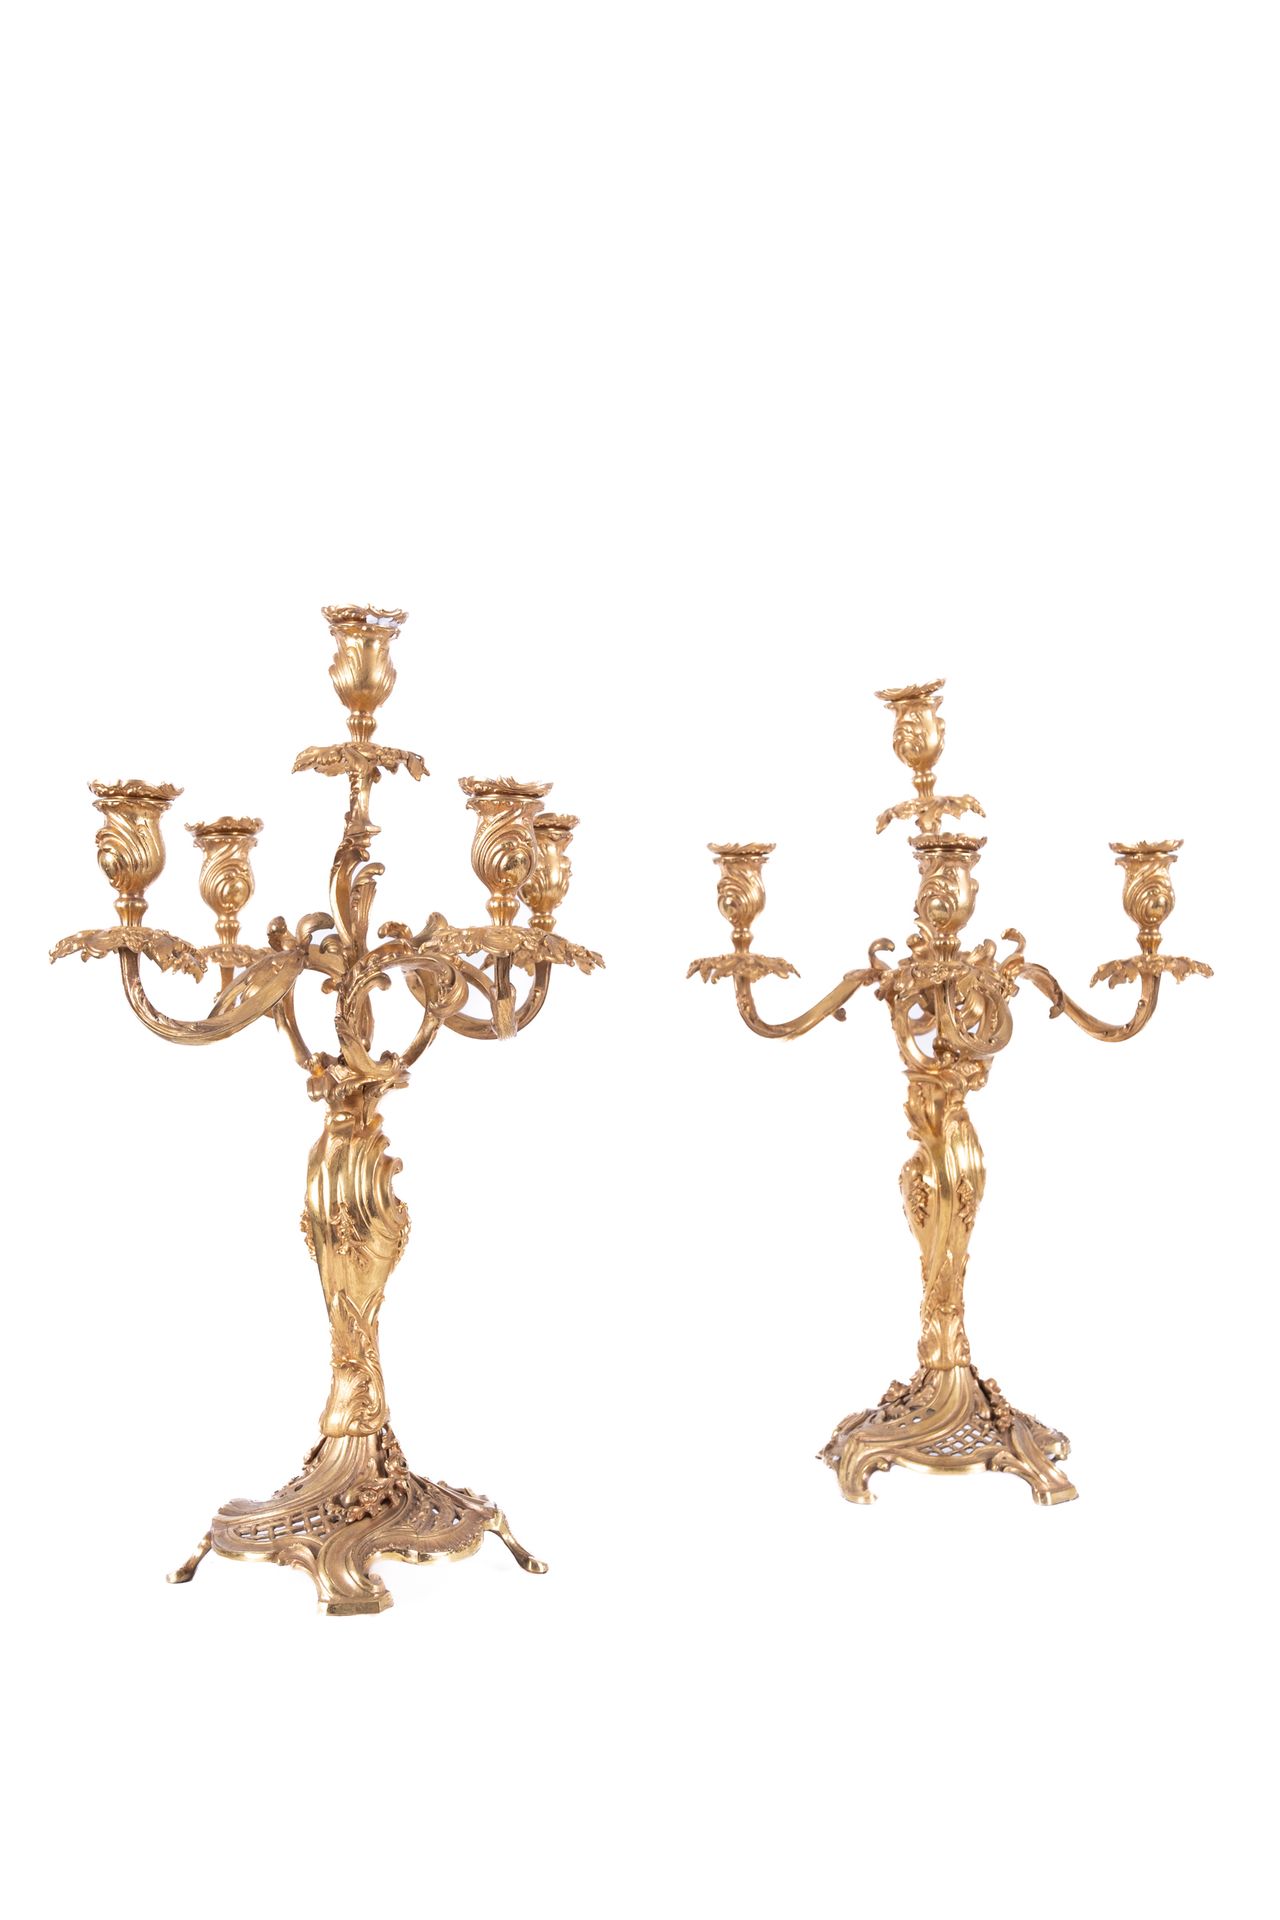 Null Ein Paar Kandelaber aus vergoldeter Bronze mit fünf Armen.

Epoche Napoleon&hellip;